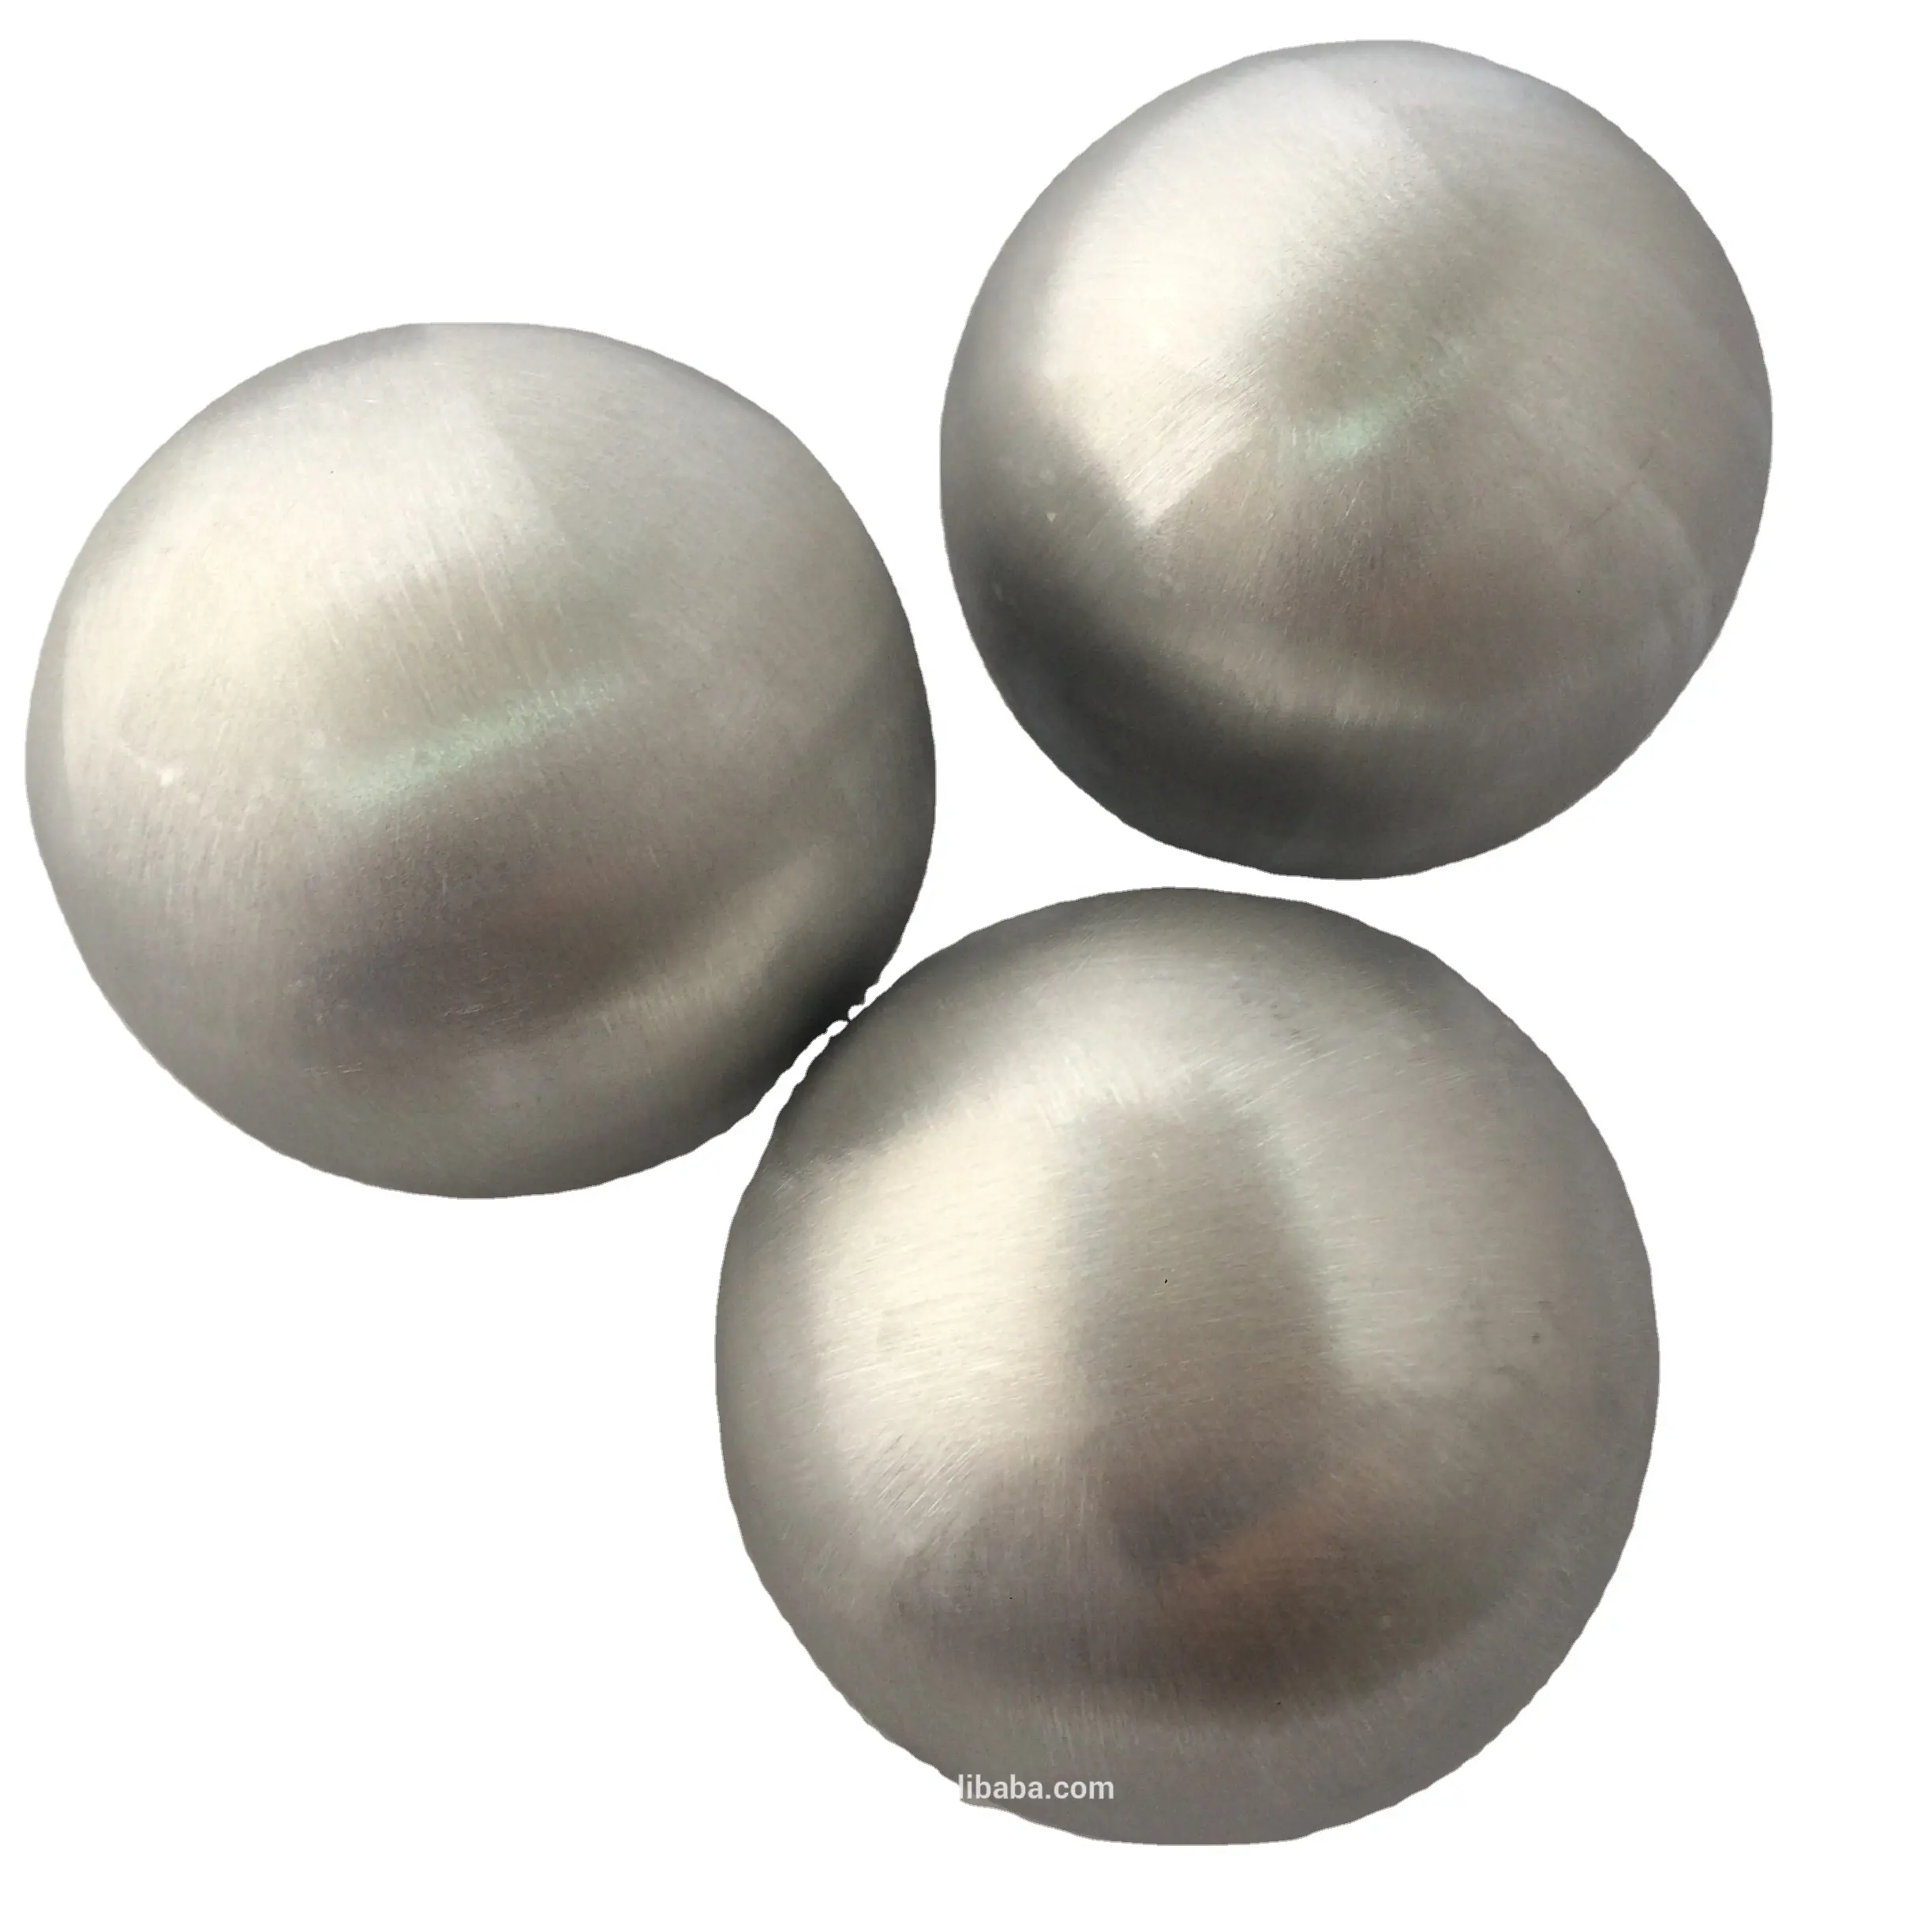 Медный и алюминиевые шары одинаково. Алюминиевый шарик. Шарики из алюминия. Полый шарик. Полый металлический шар из алюминия.